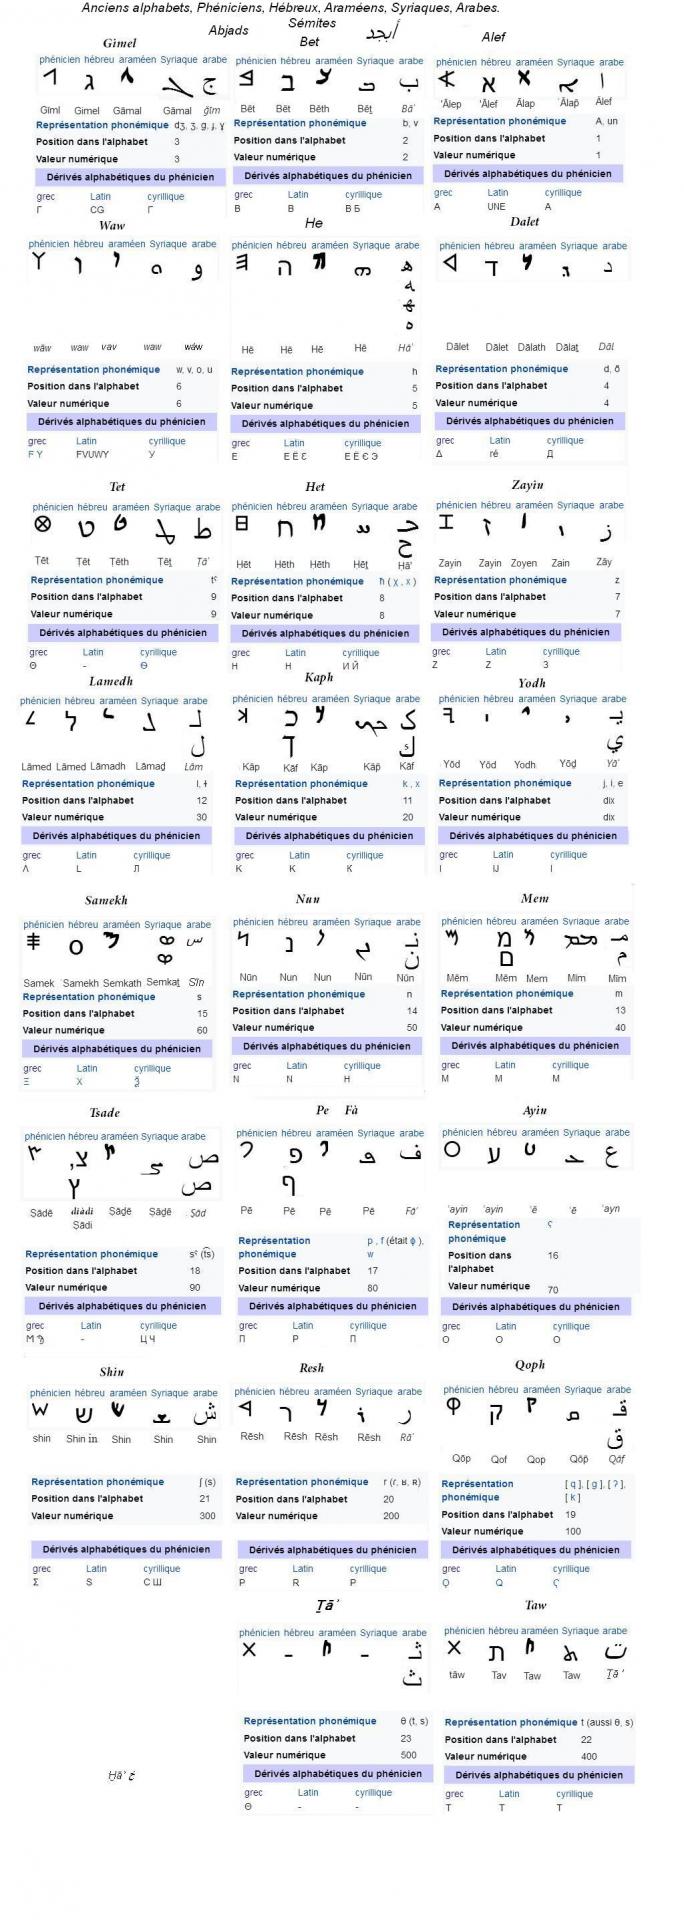 Concordance alphabets semitiques